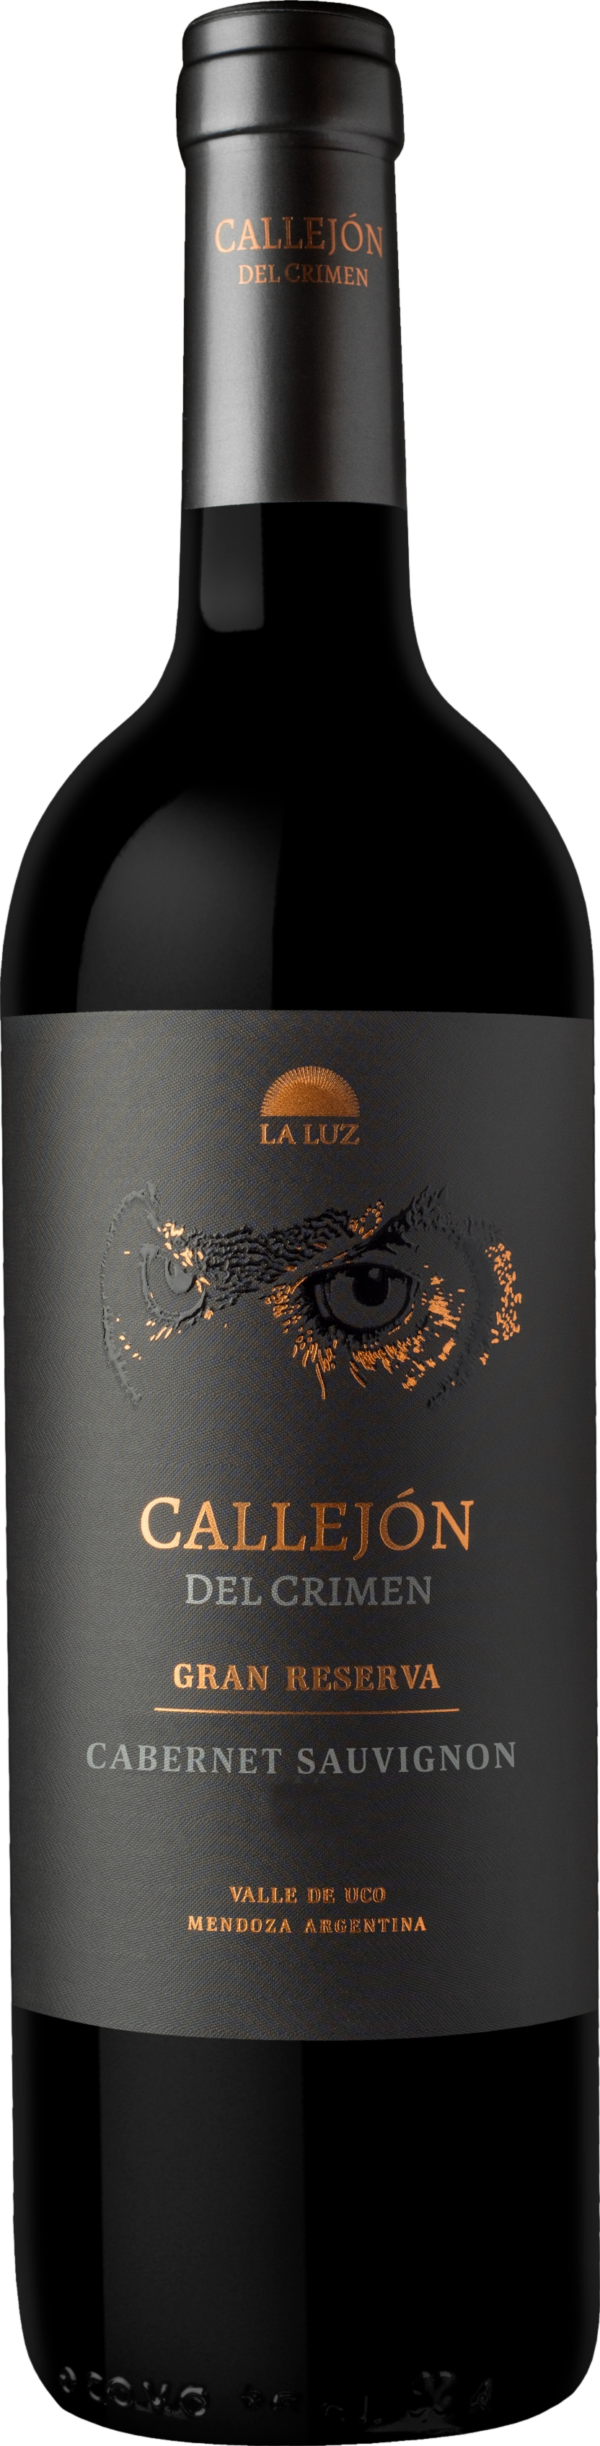 Product image of Callejon del Crimen Gran Reserva Cabernet Sauvignon 2017 from 8wines